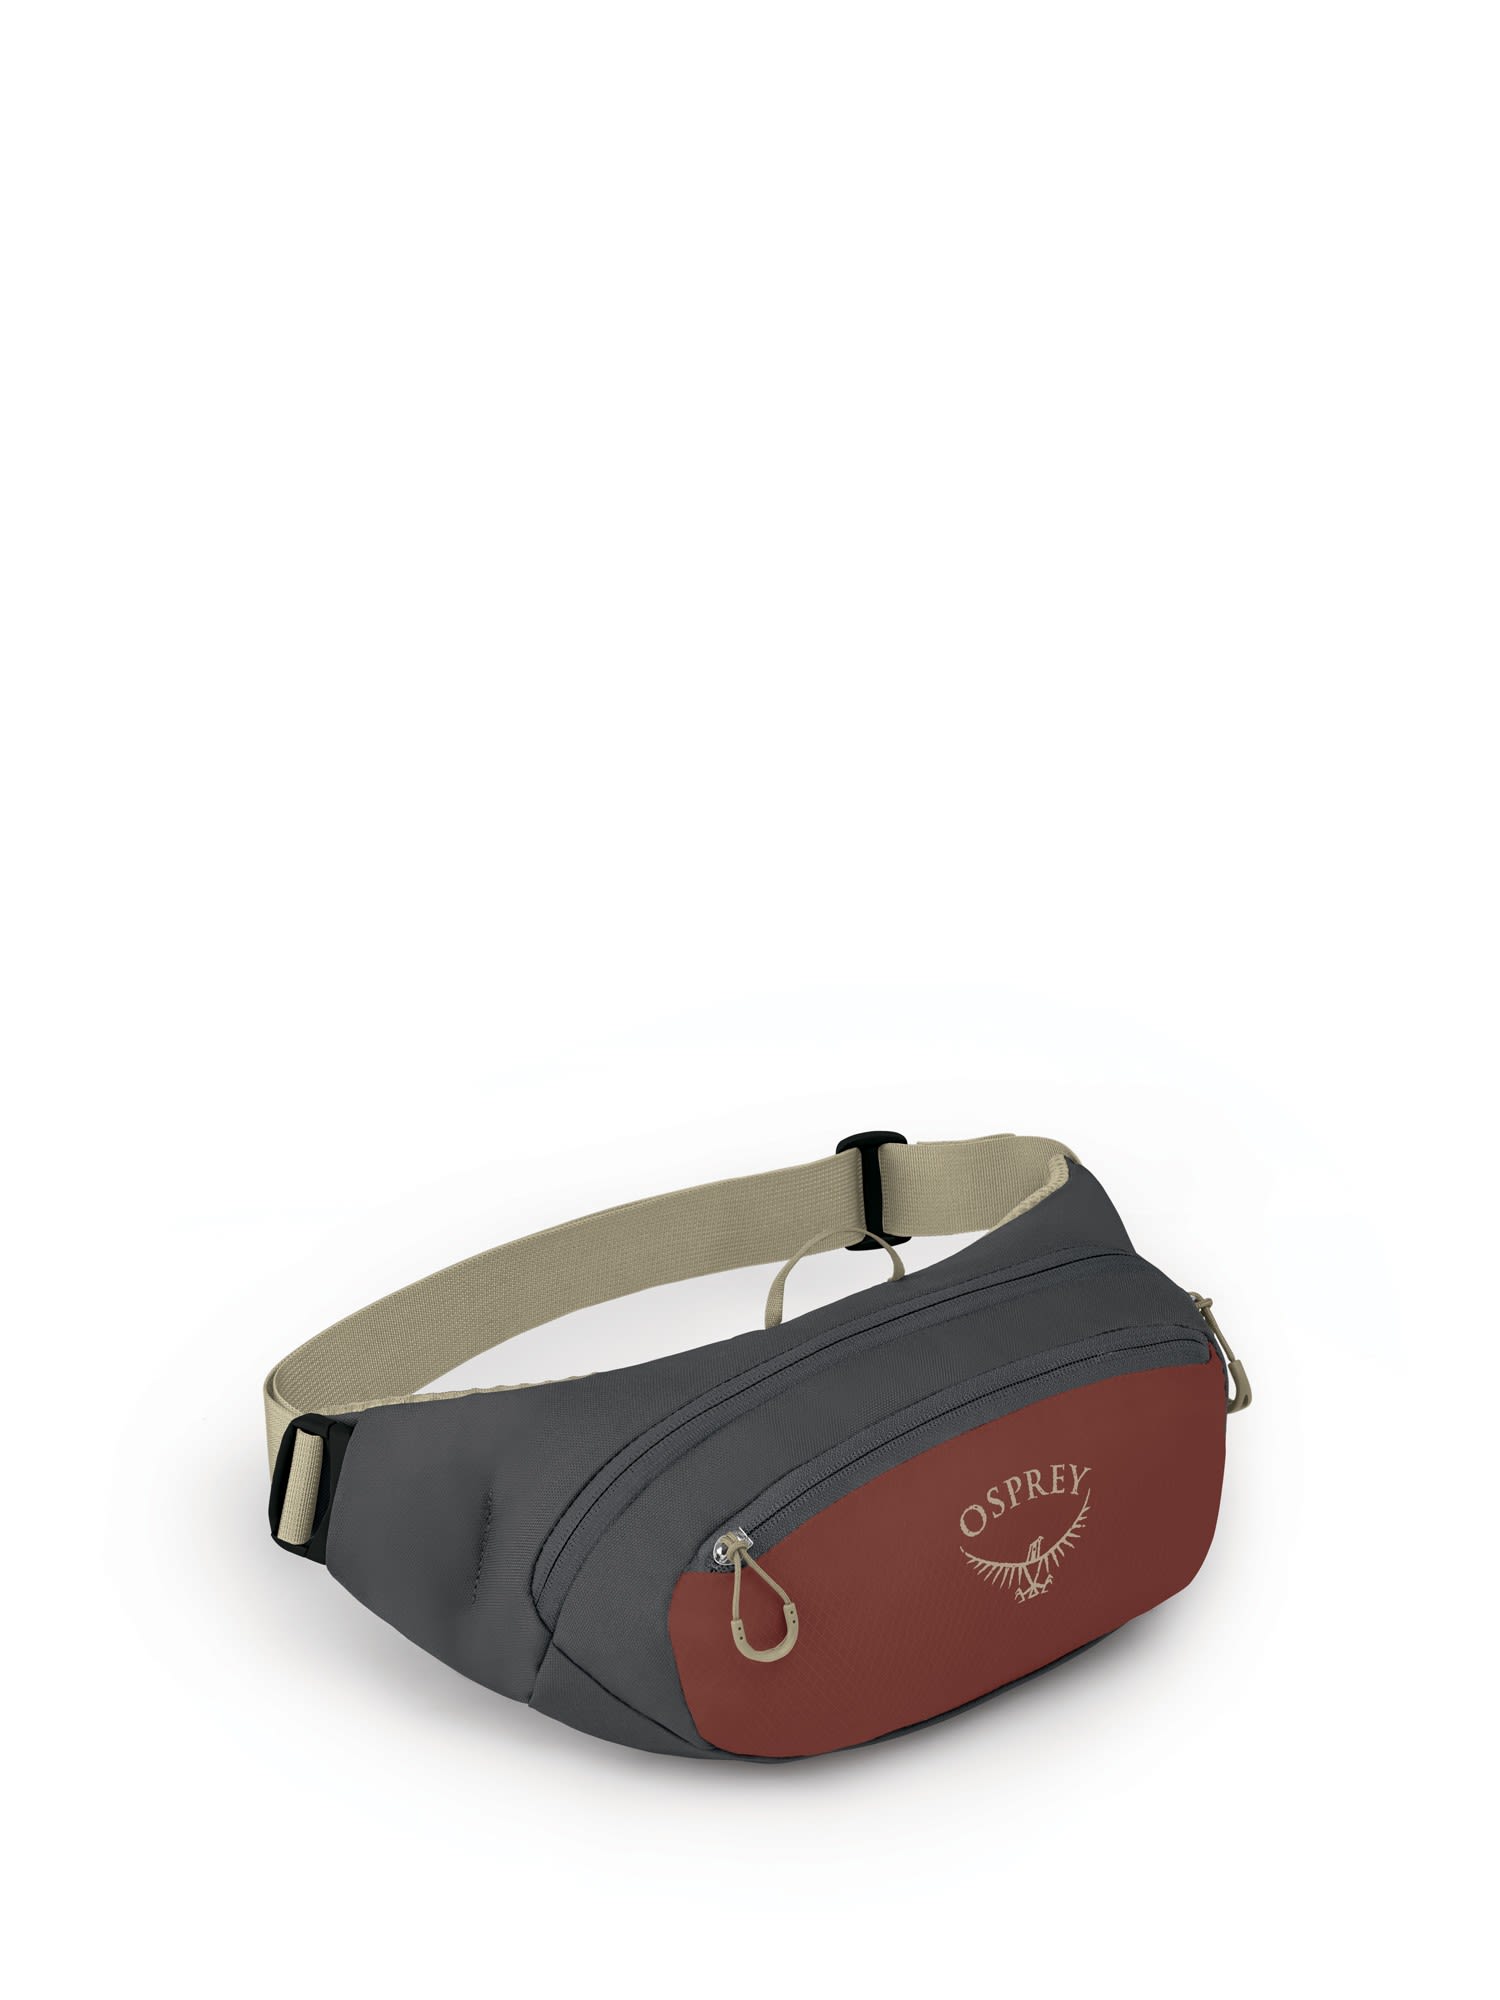 Osprey Daylite Waist Grau - Rot- Grtel- und Hfttaschen- Grsse 2l - Farbe Acorn Red - Tunnel Vision Grey unter Osprey